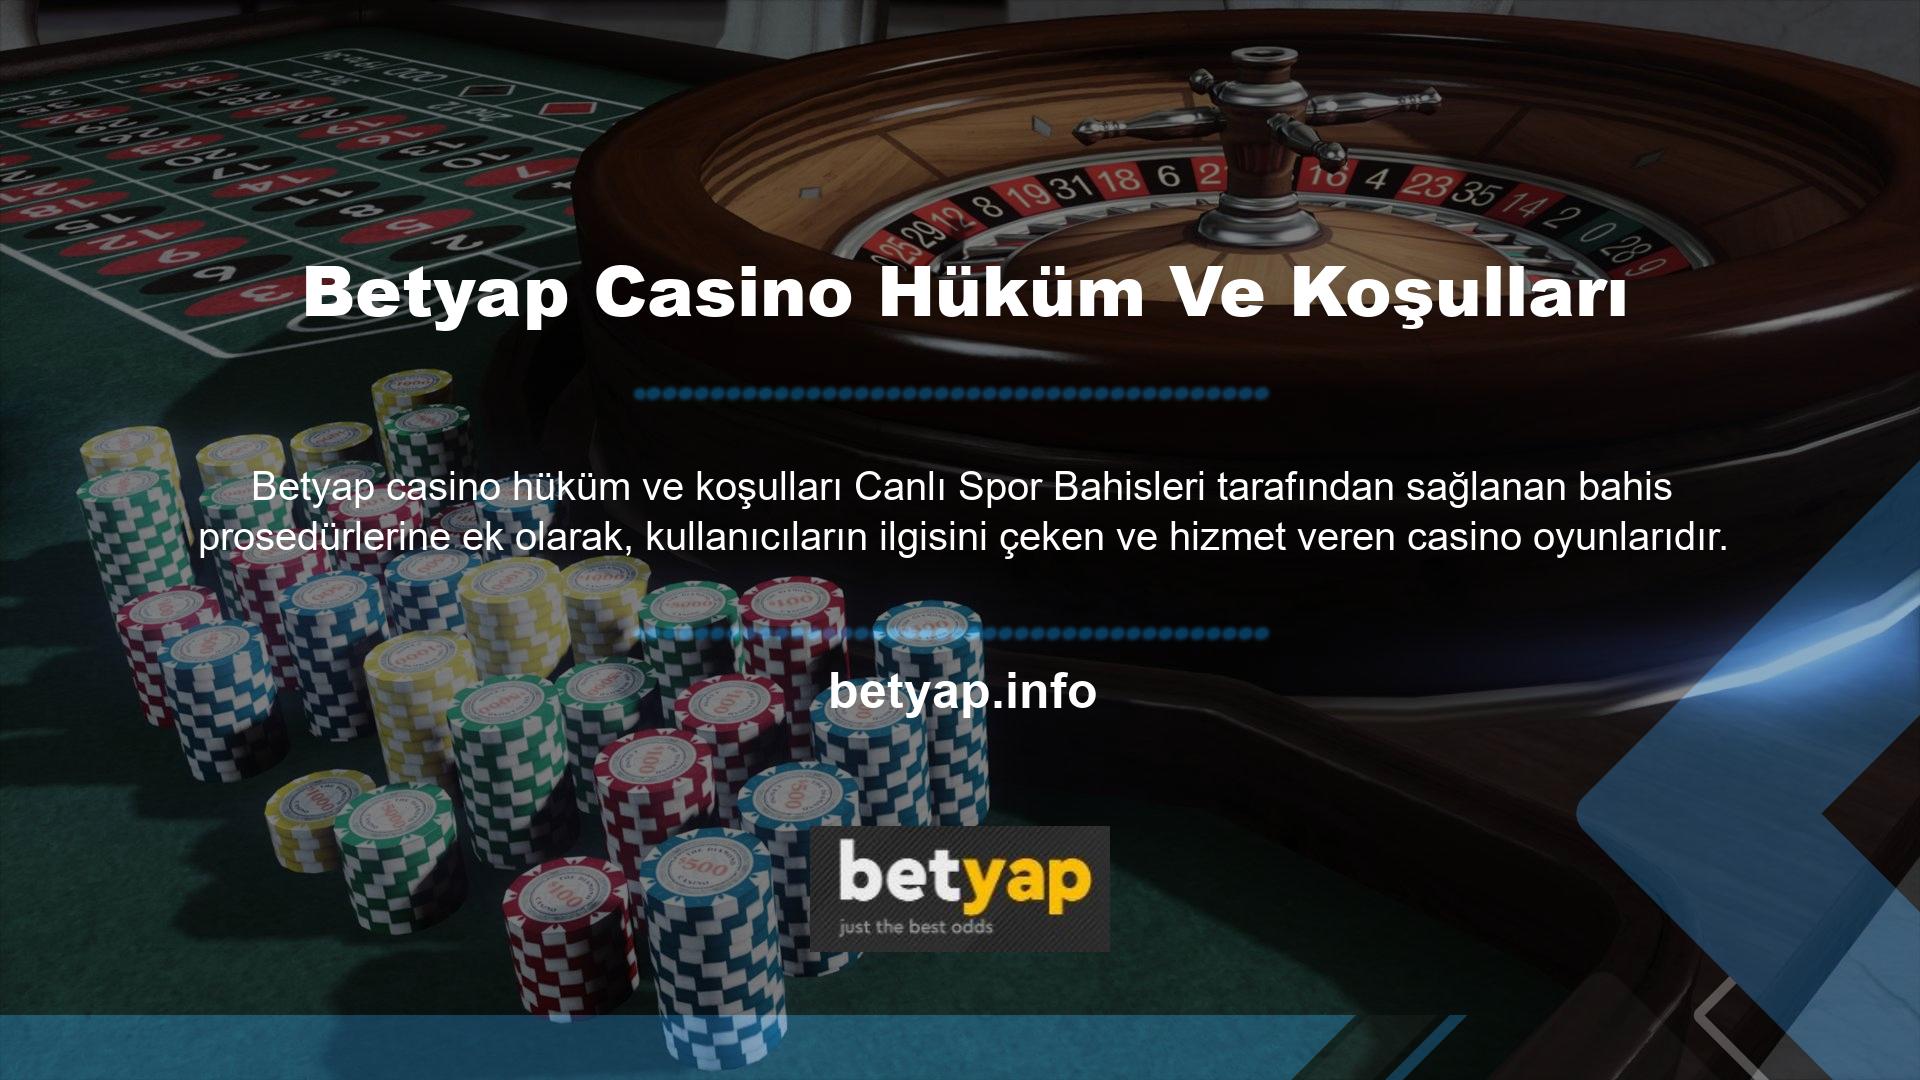 Birçok oyun sitesi Betyap Casino hizmetleri sunar, ancak çok çeşitli premium oyun siteleri arasından da seçim yapabilirsiniz